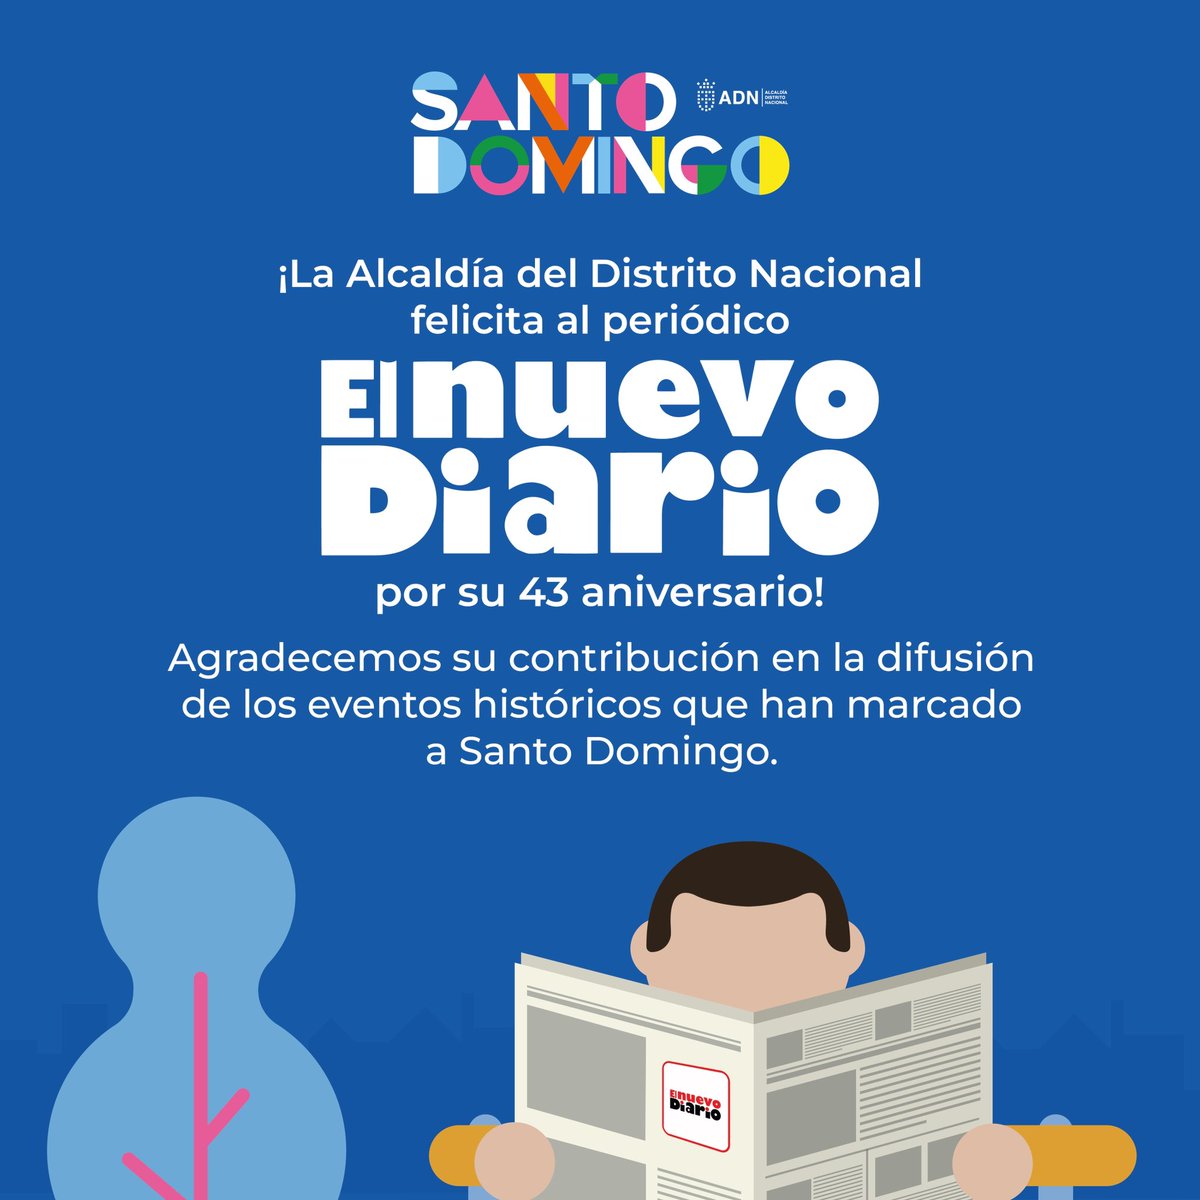 ¡Hoy celebramos el 43 aniversario del periódico @elnuevodiariord ! Agradecemos su contribución en la difusión de los eventos históricos que han marcado a Santo Domingo.